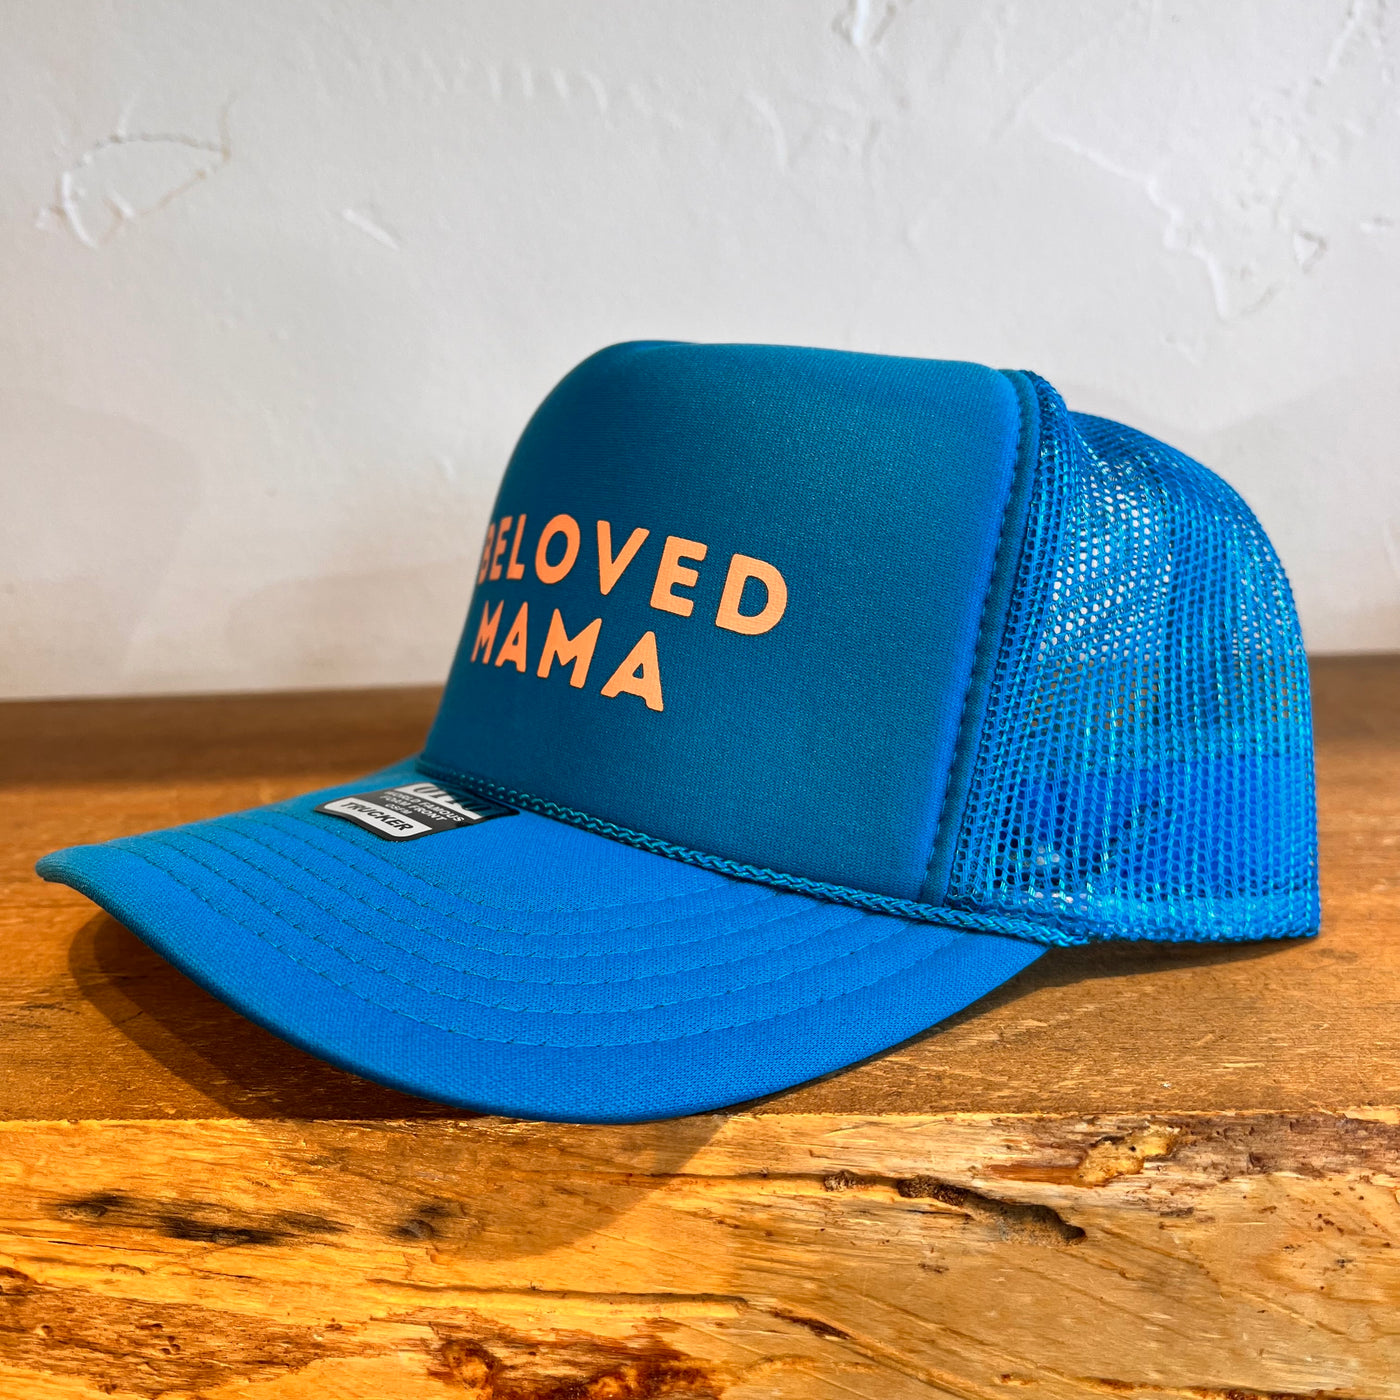 Beloved Mama Trucker Hat